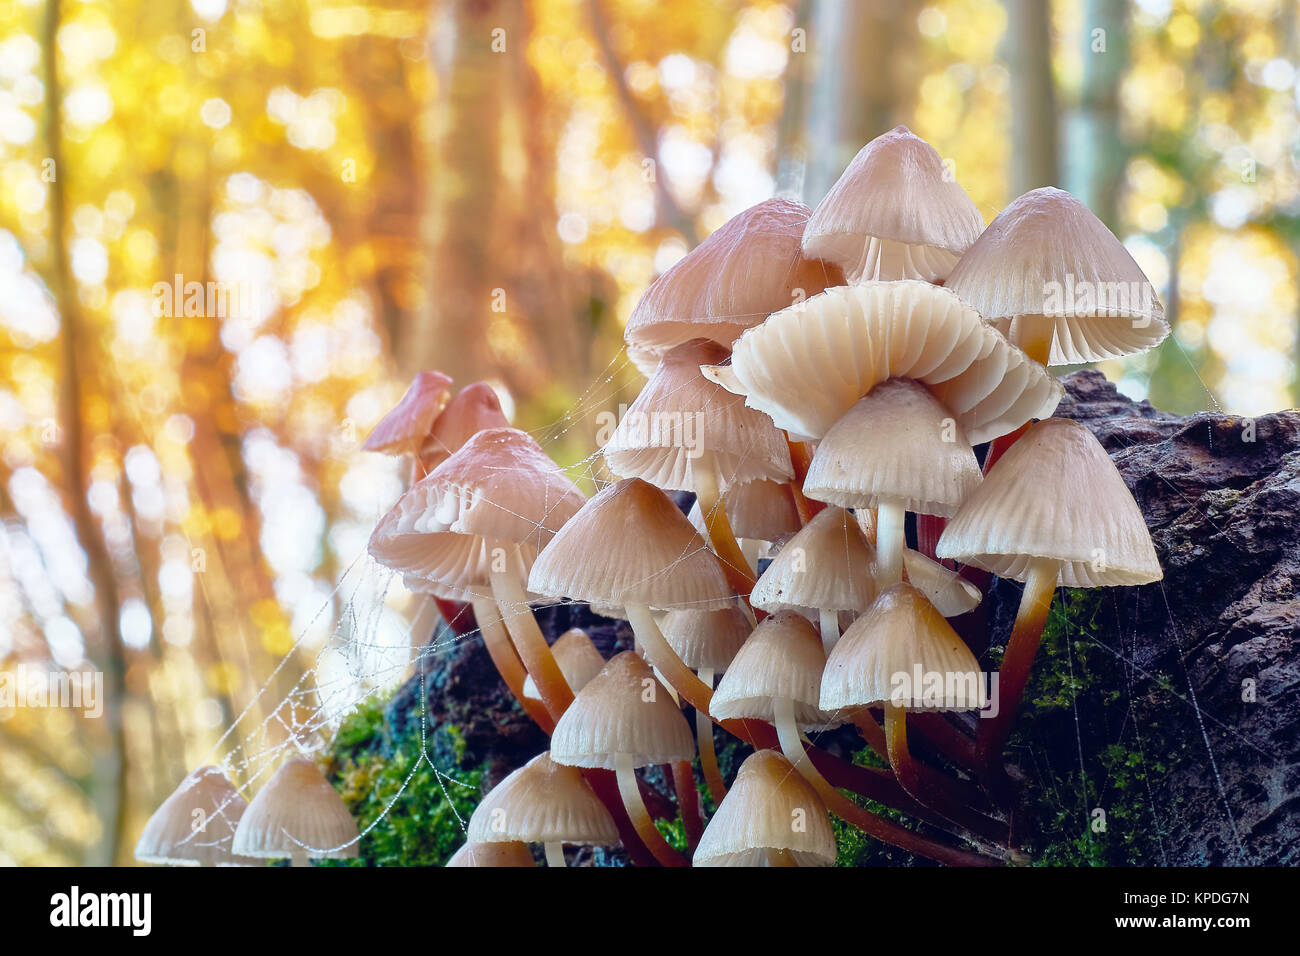 Mushrooms in natural environment. Closeup and macro photography. Stock Photo